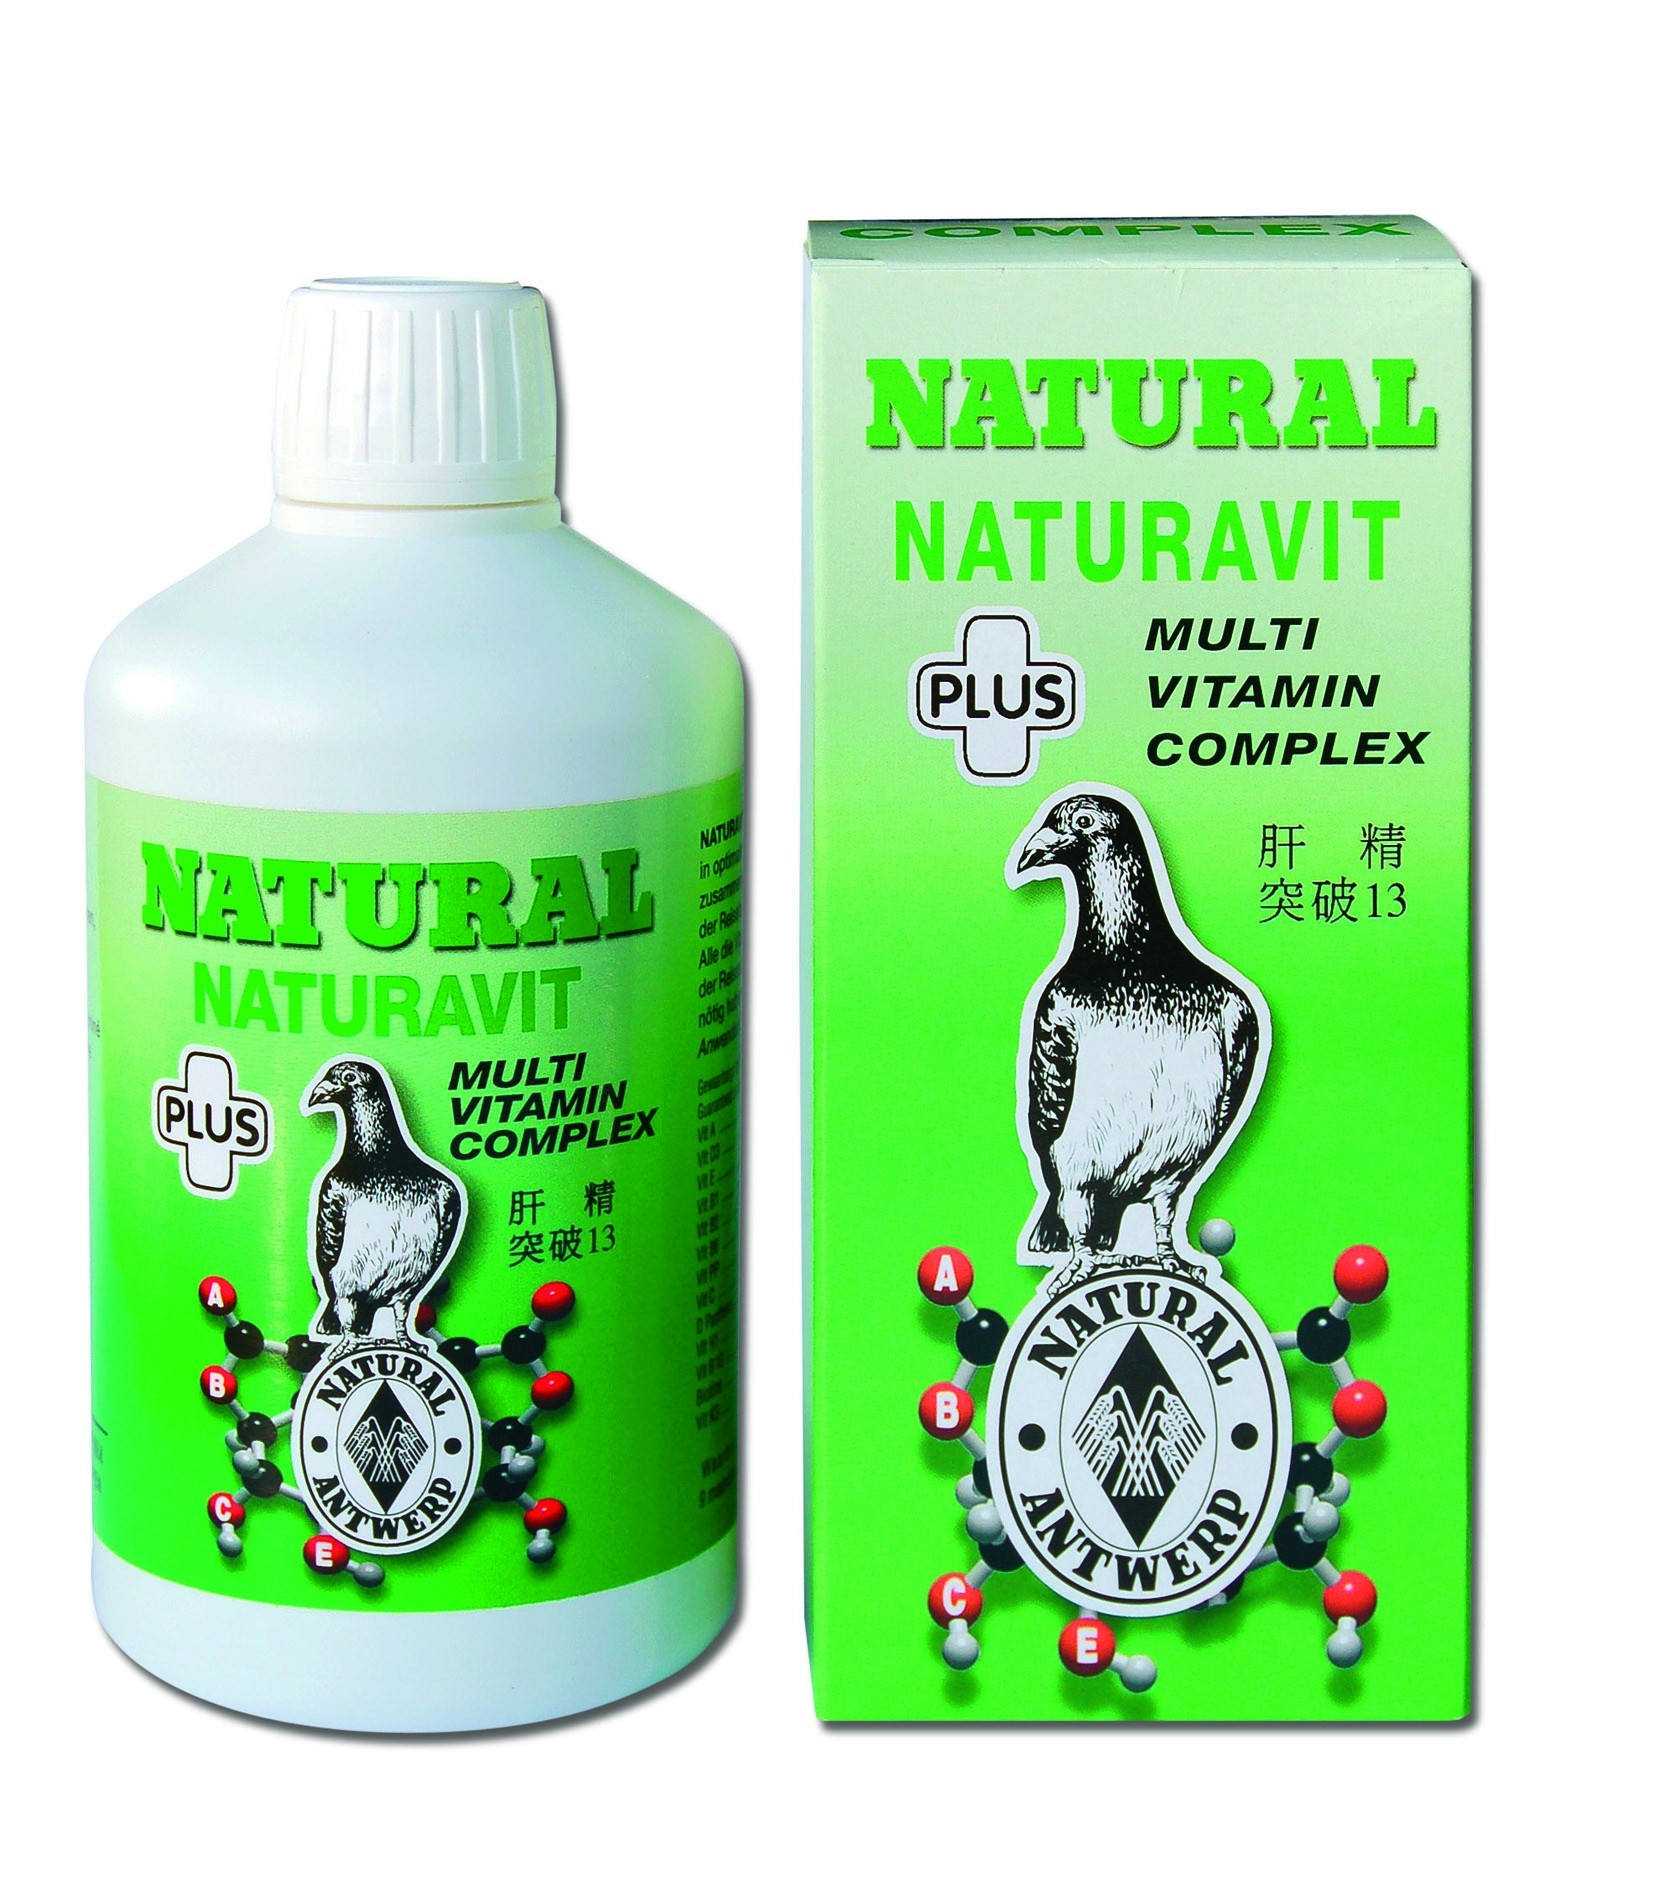 Natural naturavit plus 250ml